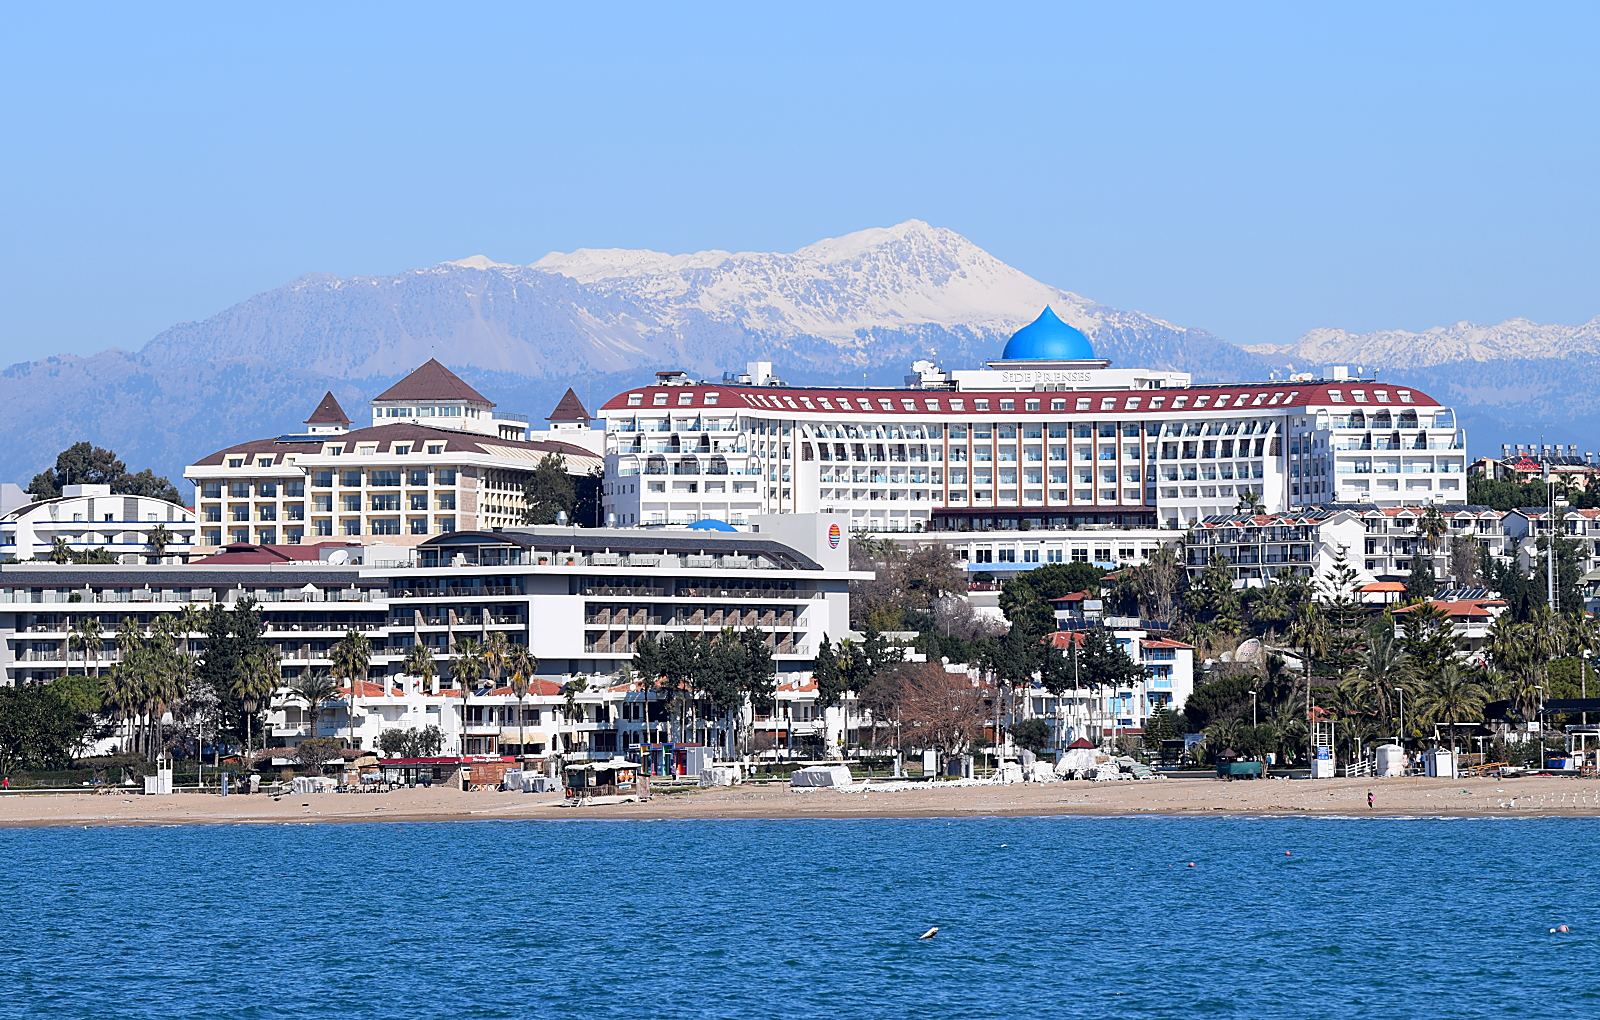 Hotel Prenses vom Meer gesehen